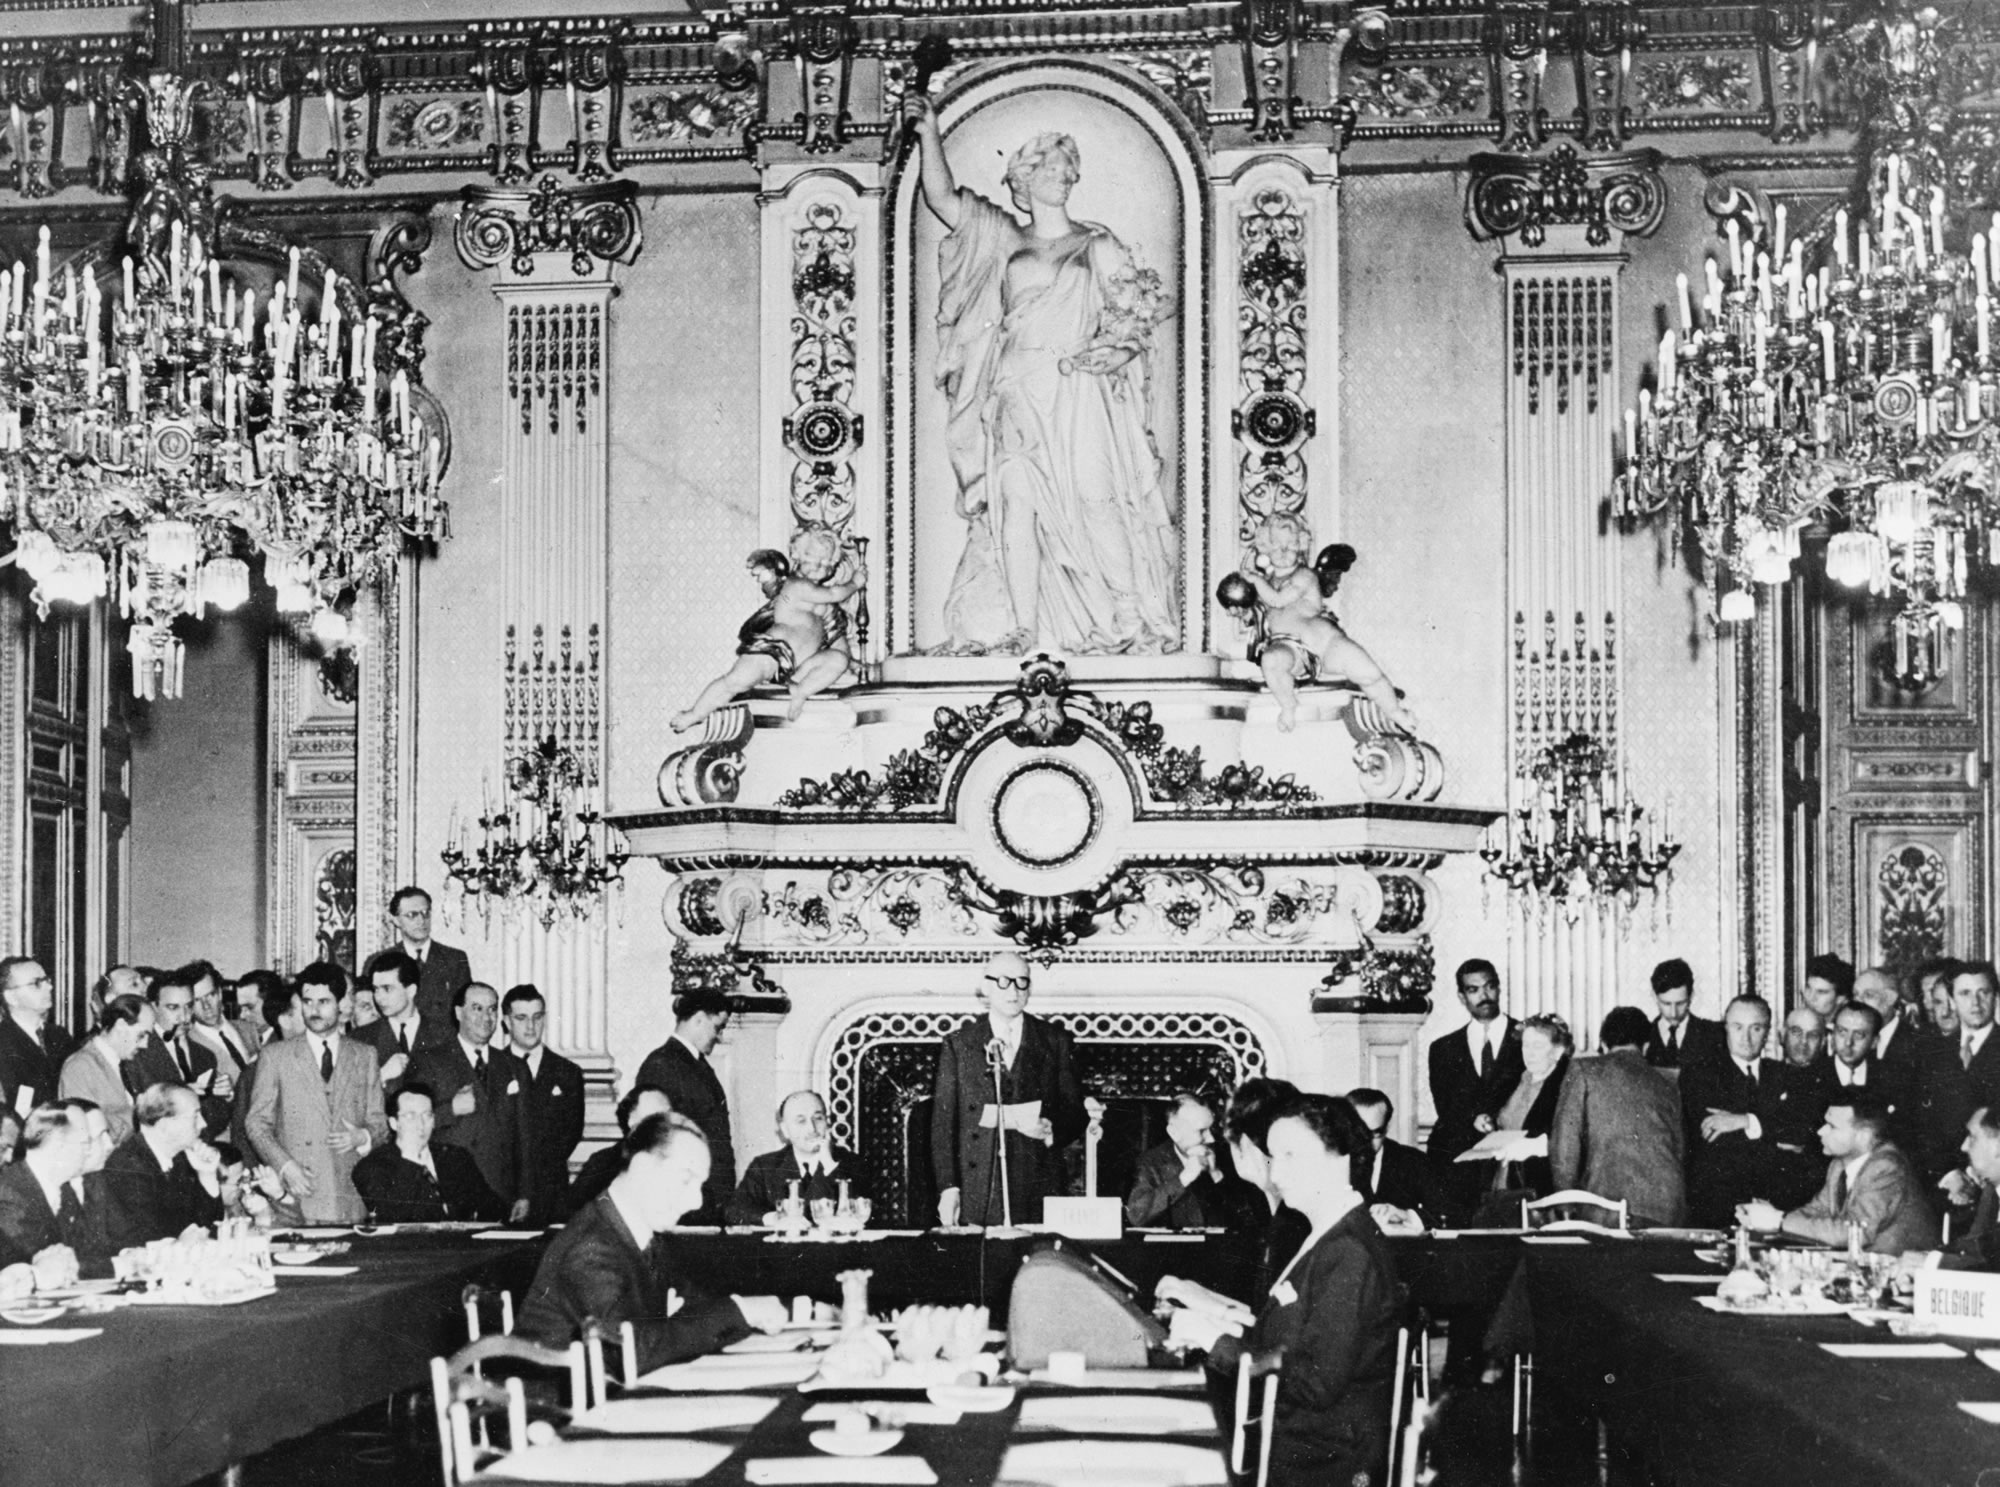 Schumanerklæringen den 9. maj 1950 i ursalonen i det franske udenrigsministerium på Quai d’Orsay i Paris: Den franske udenrigsminister Robert Schuman foreslår, at den europæiske kul- og stålindustri sammenlægges i Det Europæiske Kul- og Stålfællesskab. Idéen var at gøre en krig mellem de deltagende lande ikke alene utænkelig, men også materielt umulig.